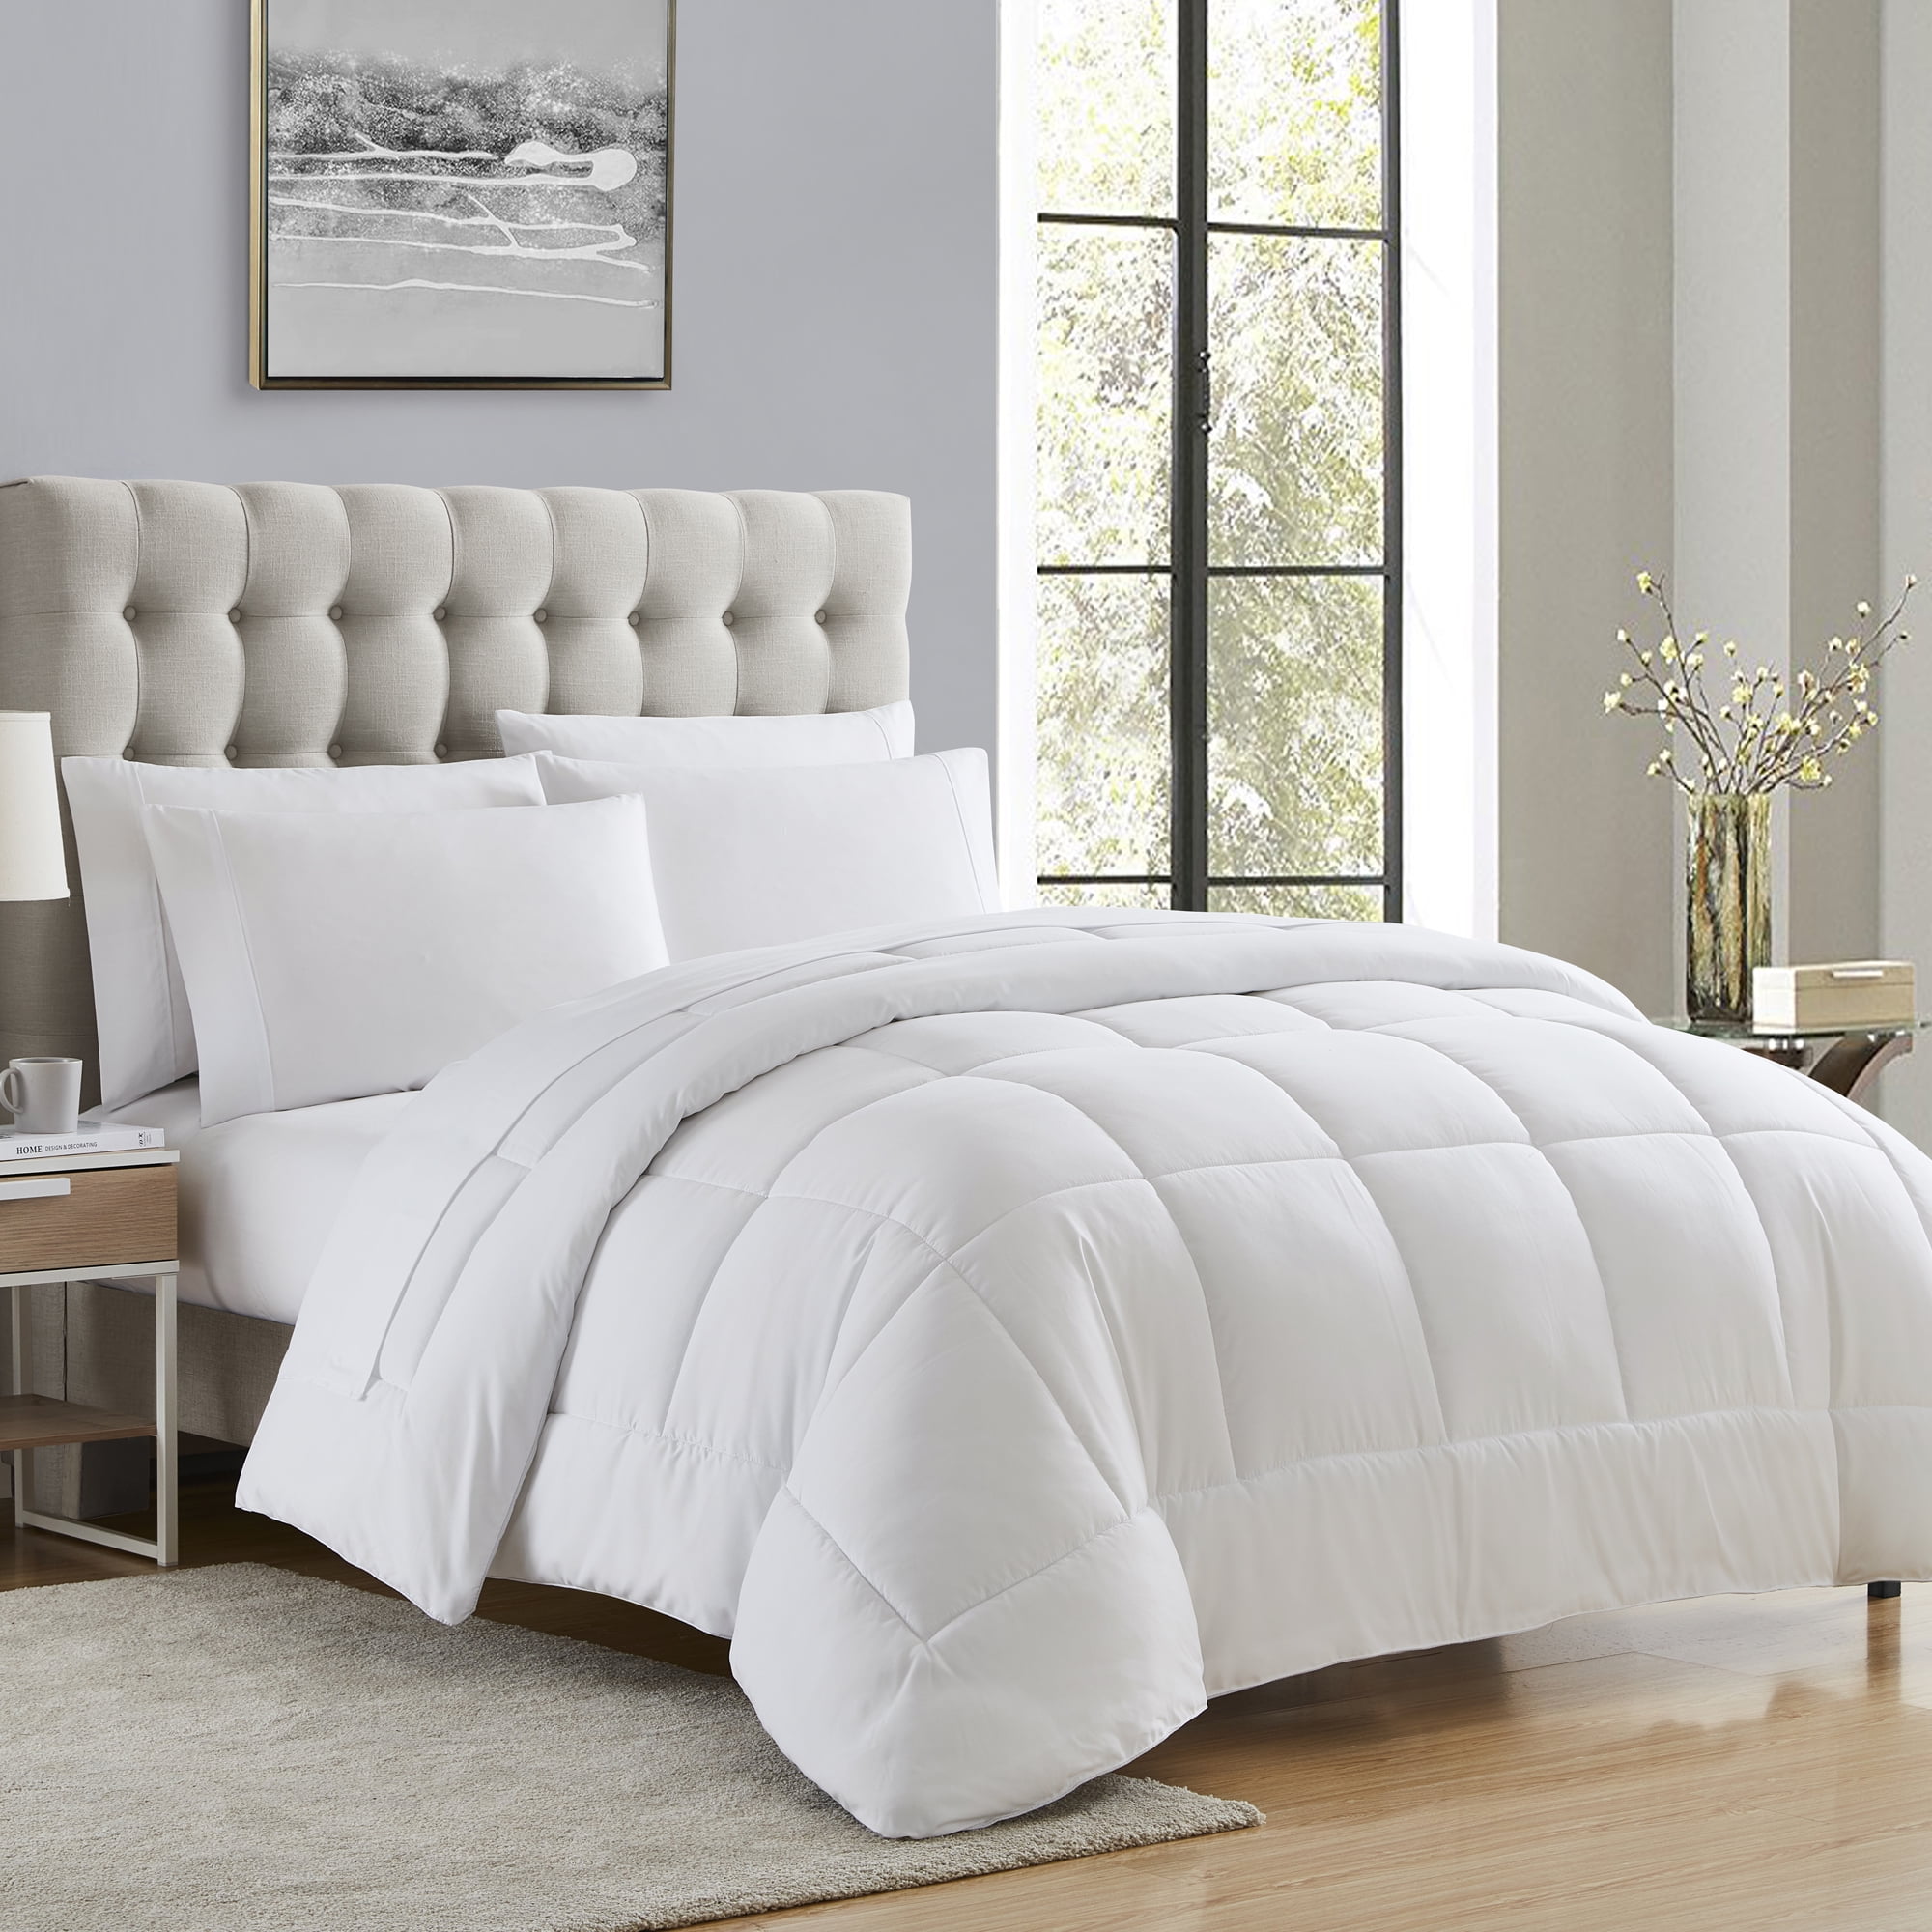 Queen size 7-Piece Bed in a Bag Beige Stripe Comforter Set